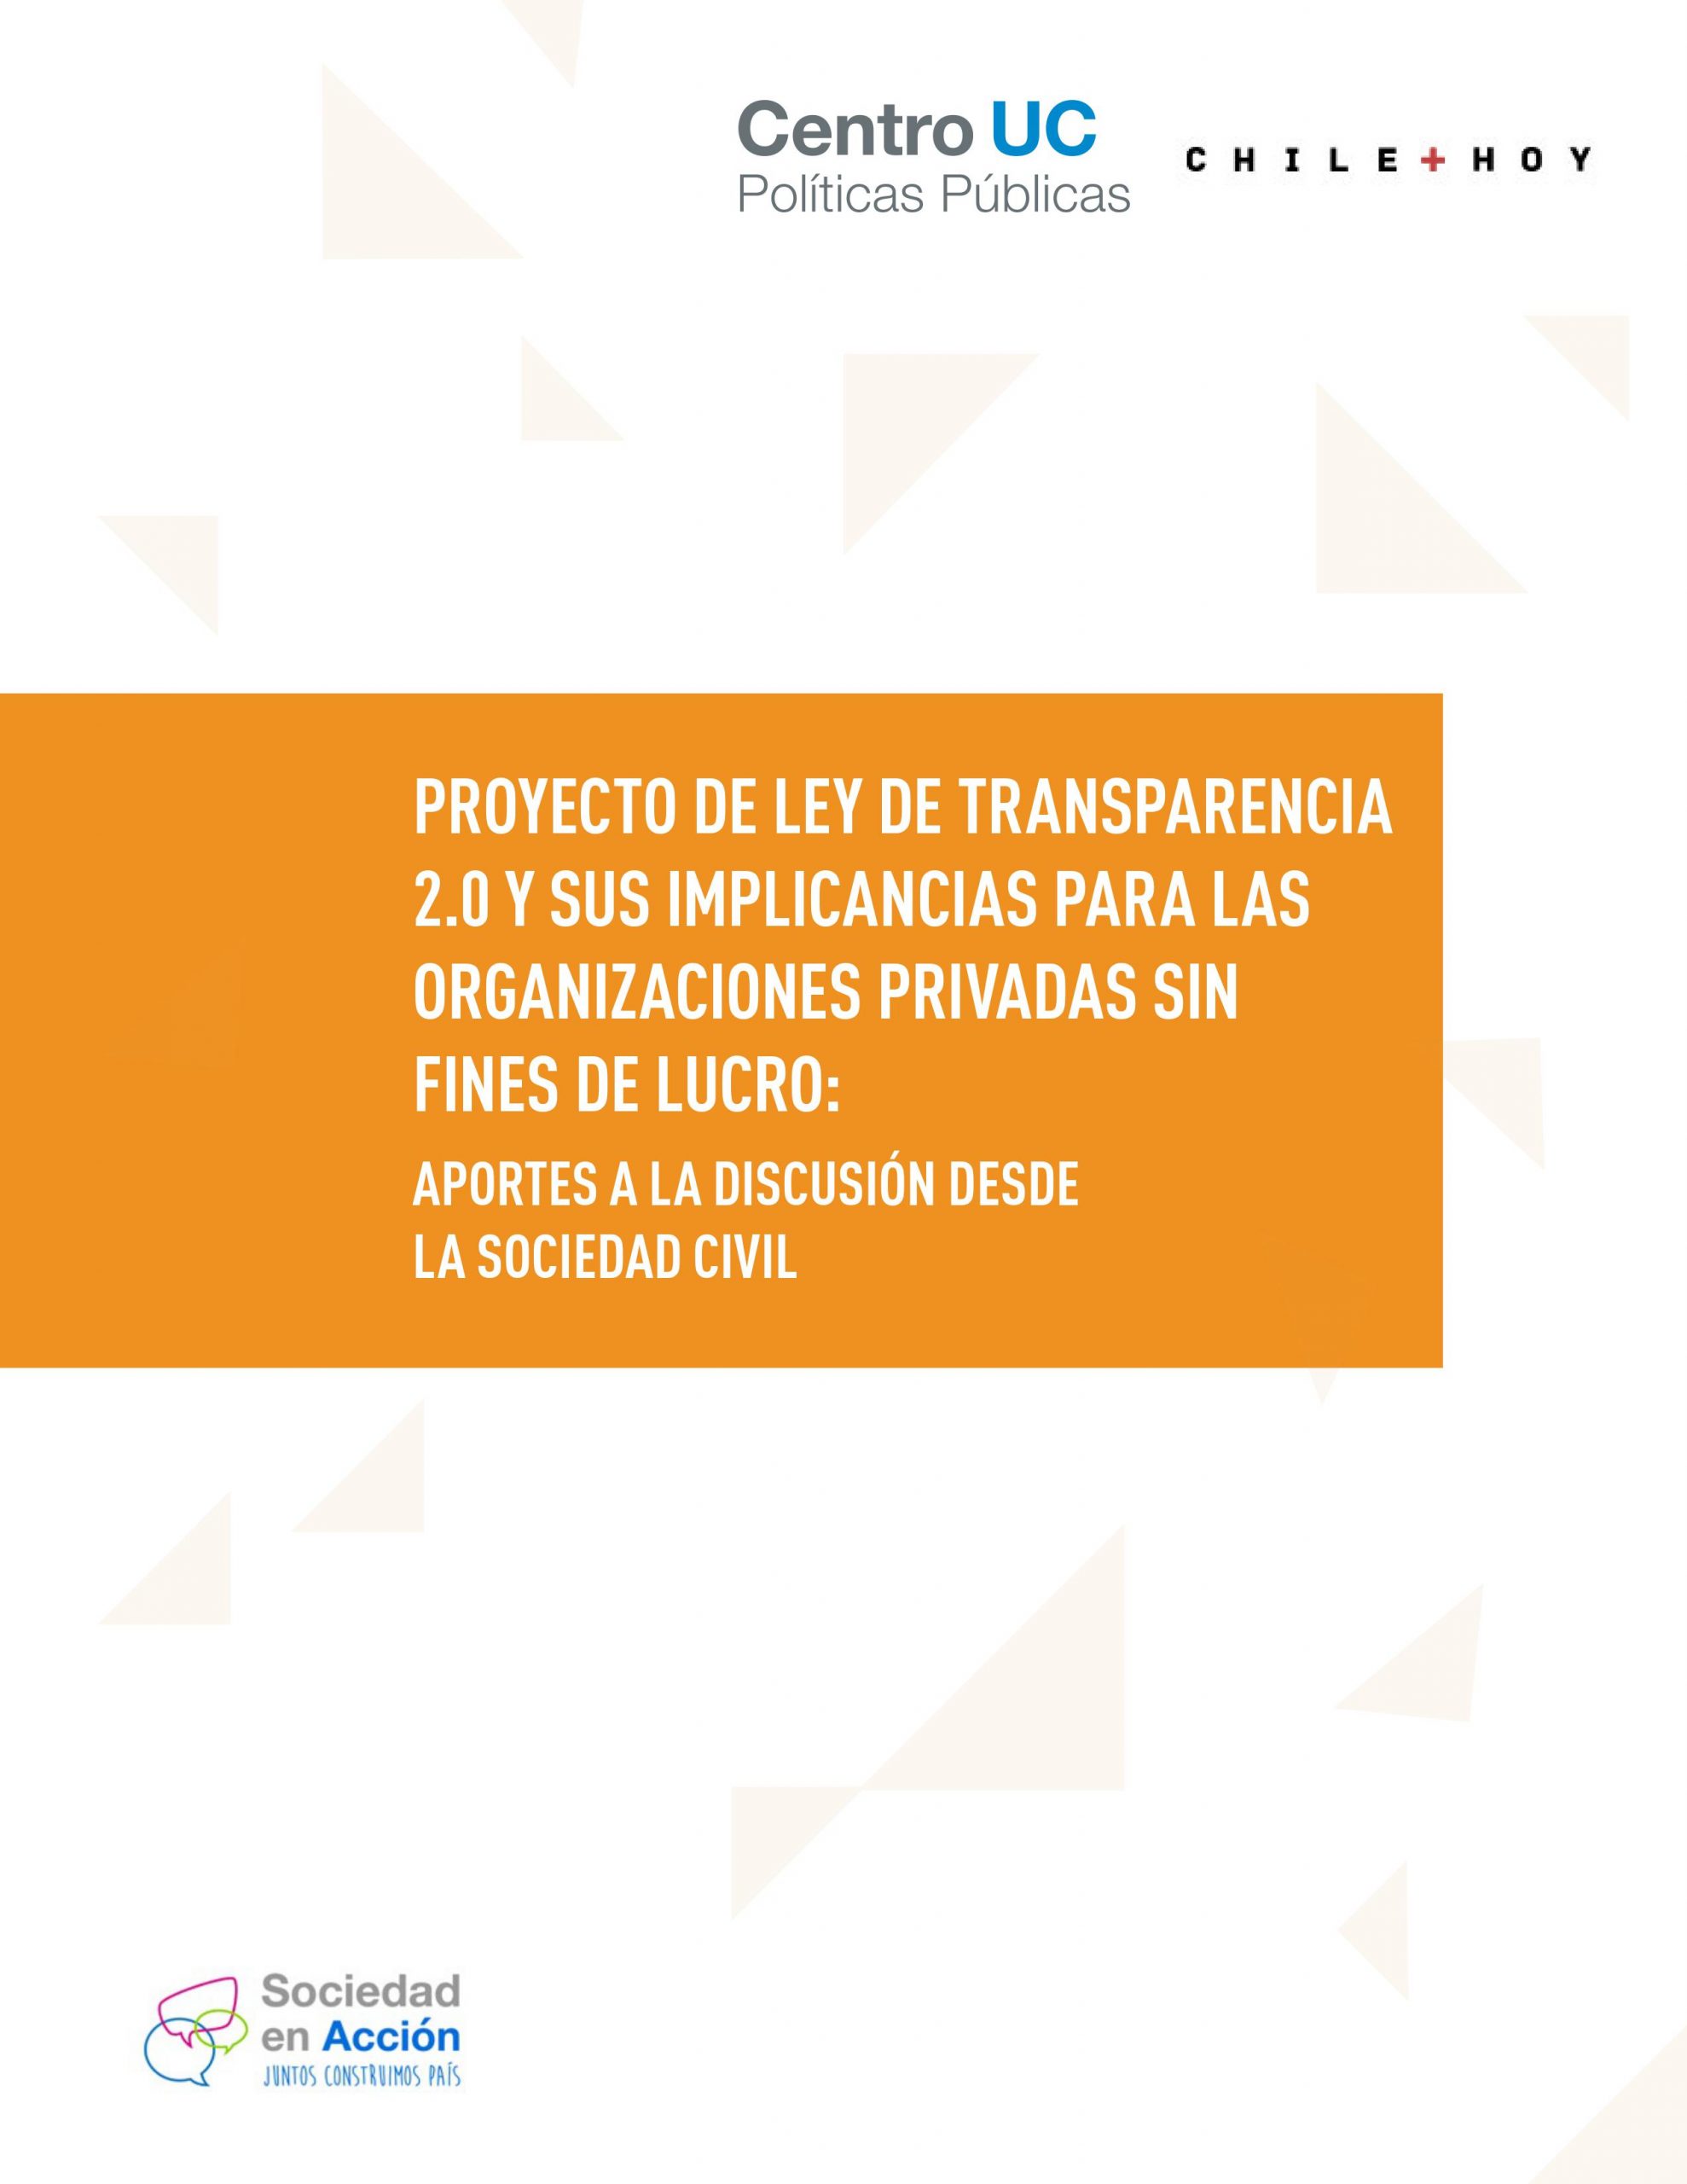 Imagen de Proyecto de Ley de Transparencia 2.0 y sus implicancias para las organizaciones sin fines de lucro: aportes a la discusión desde la sociedad civil